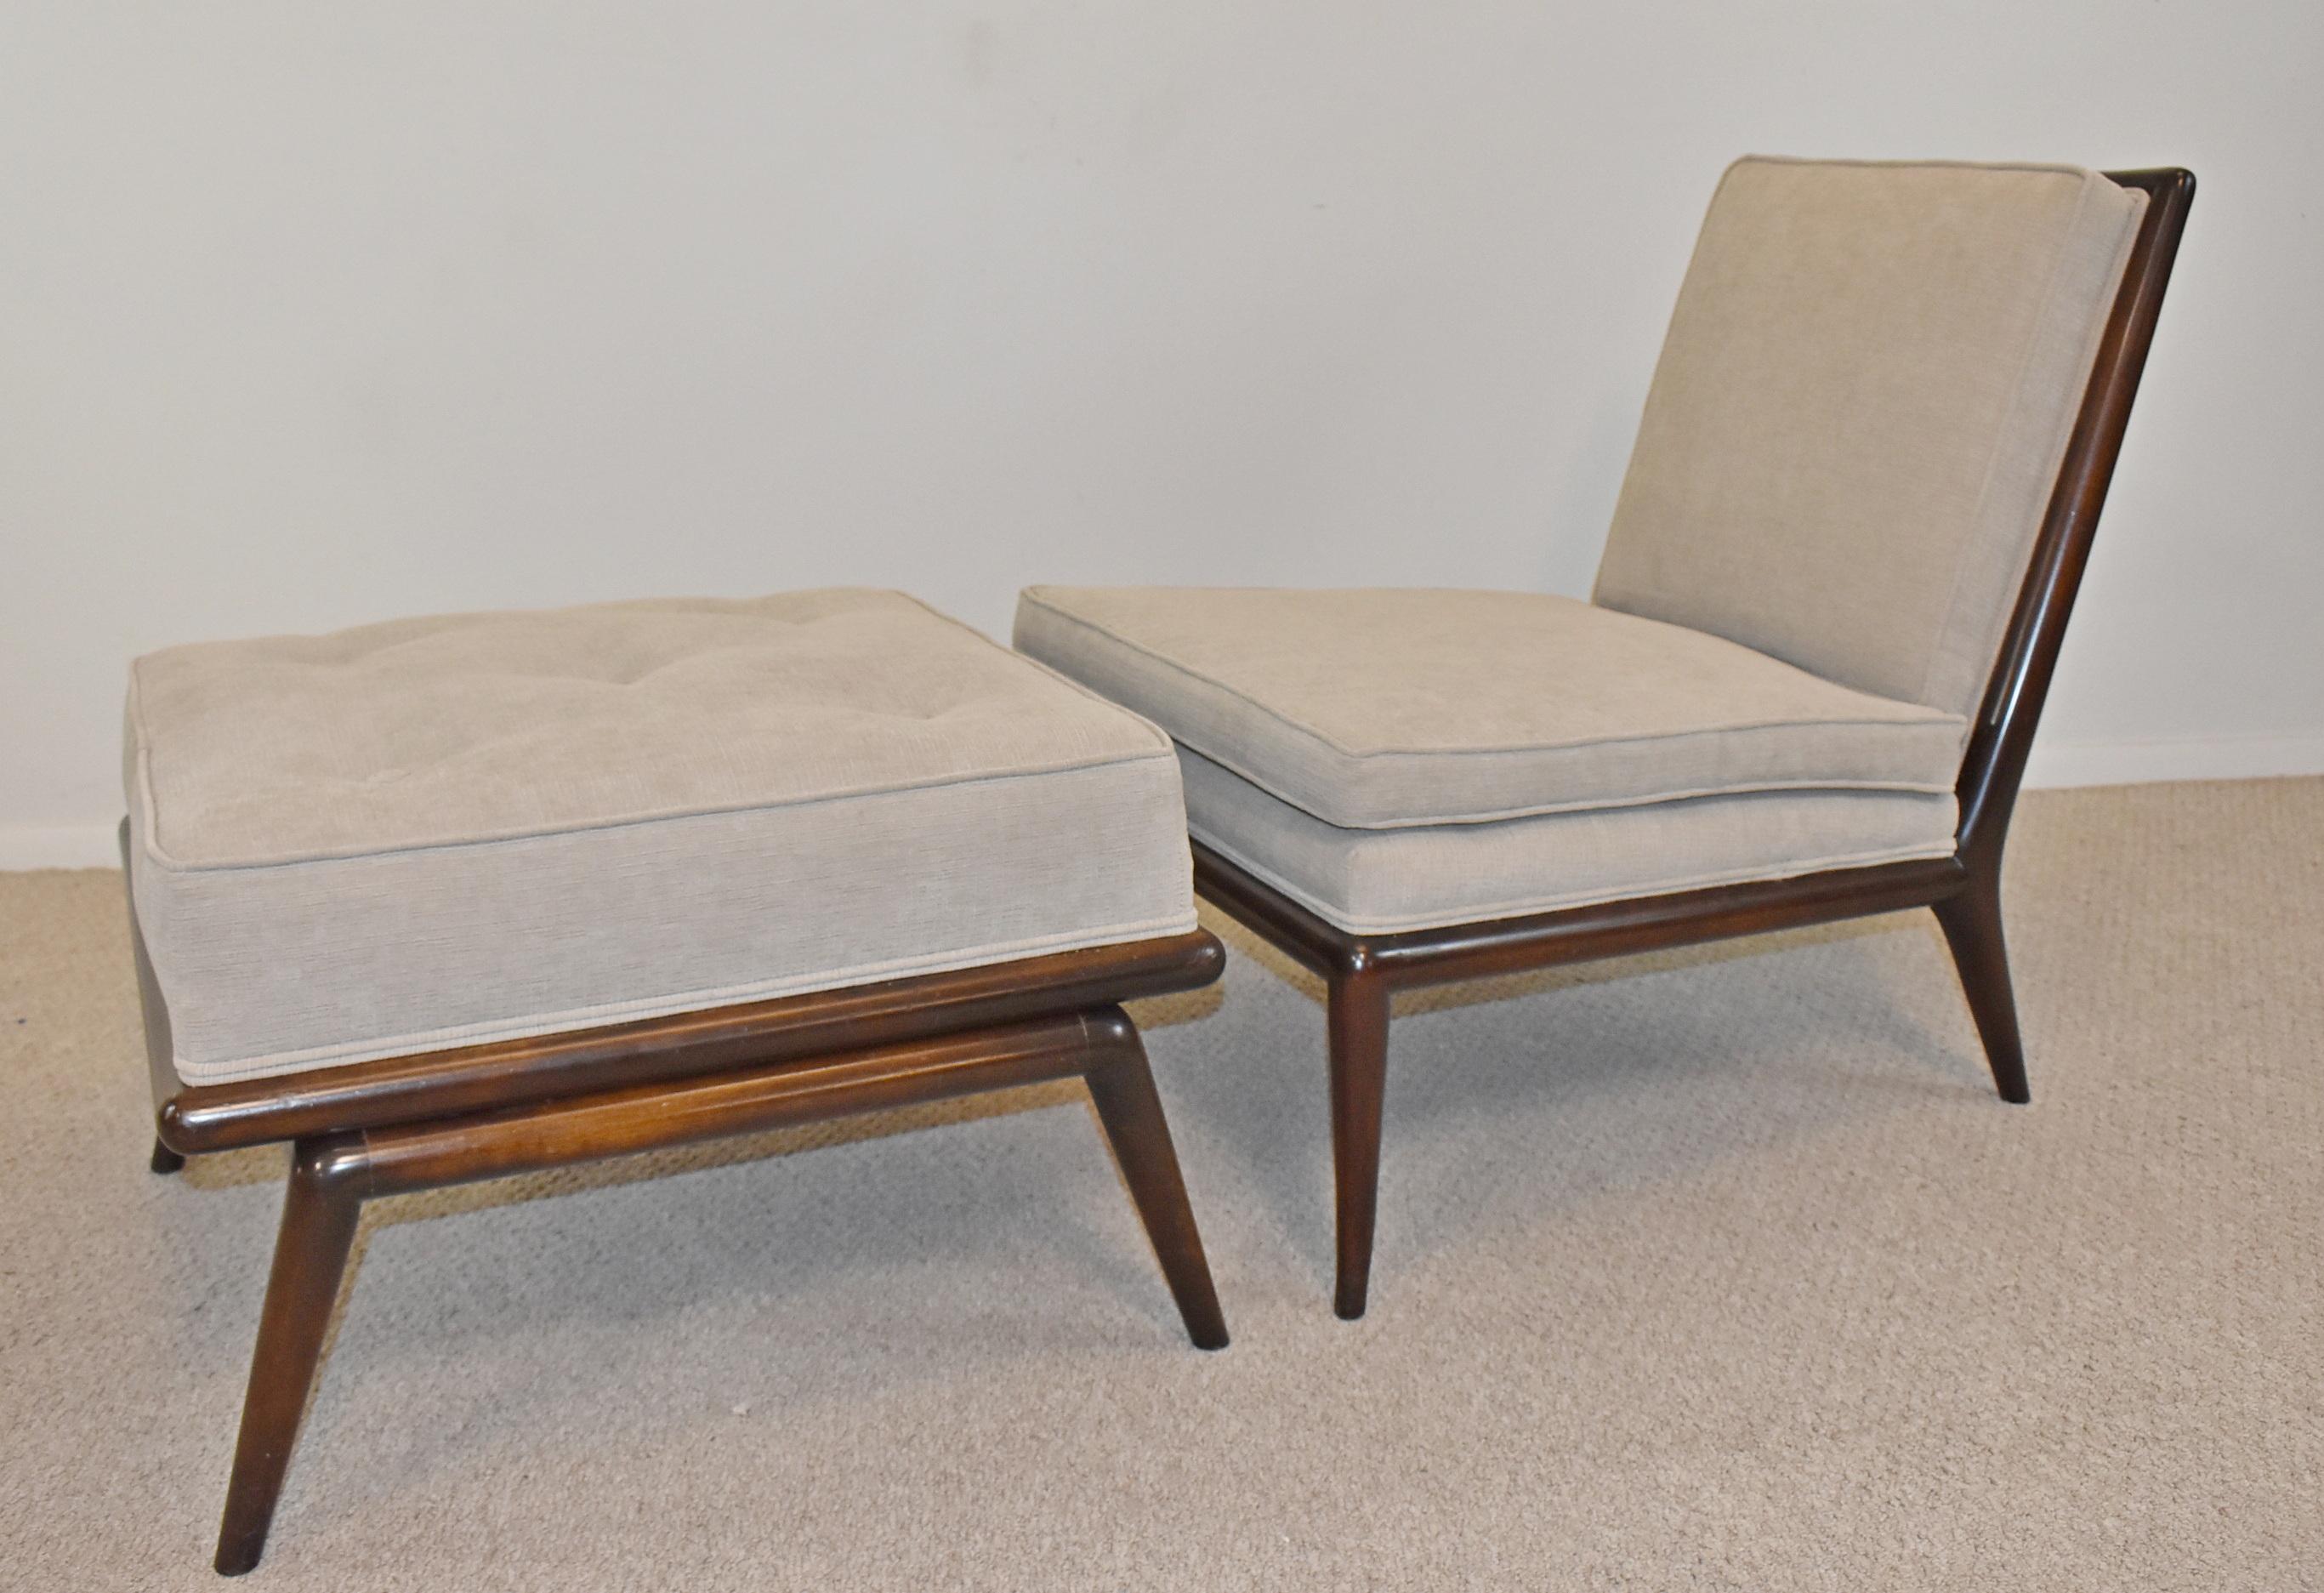 T.H. Chaise et ottoman Robsjohn-Gibbings pour Widdicomb Furniture. T.H. Robsjohn-Gibbings (1905-1976) a produit et soigné une ligne de mobilier moderniste pour Widdicomb de 1943 à 1956. La tapisserie texturée gris clair et la finition d'origine des